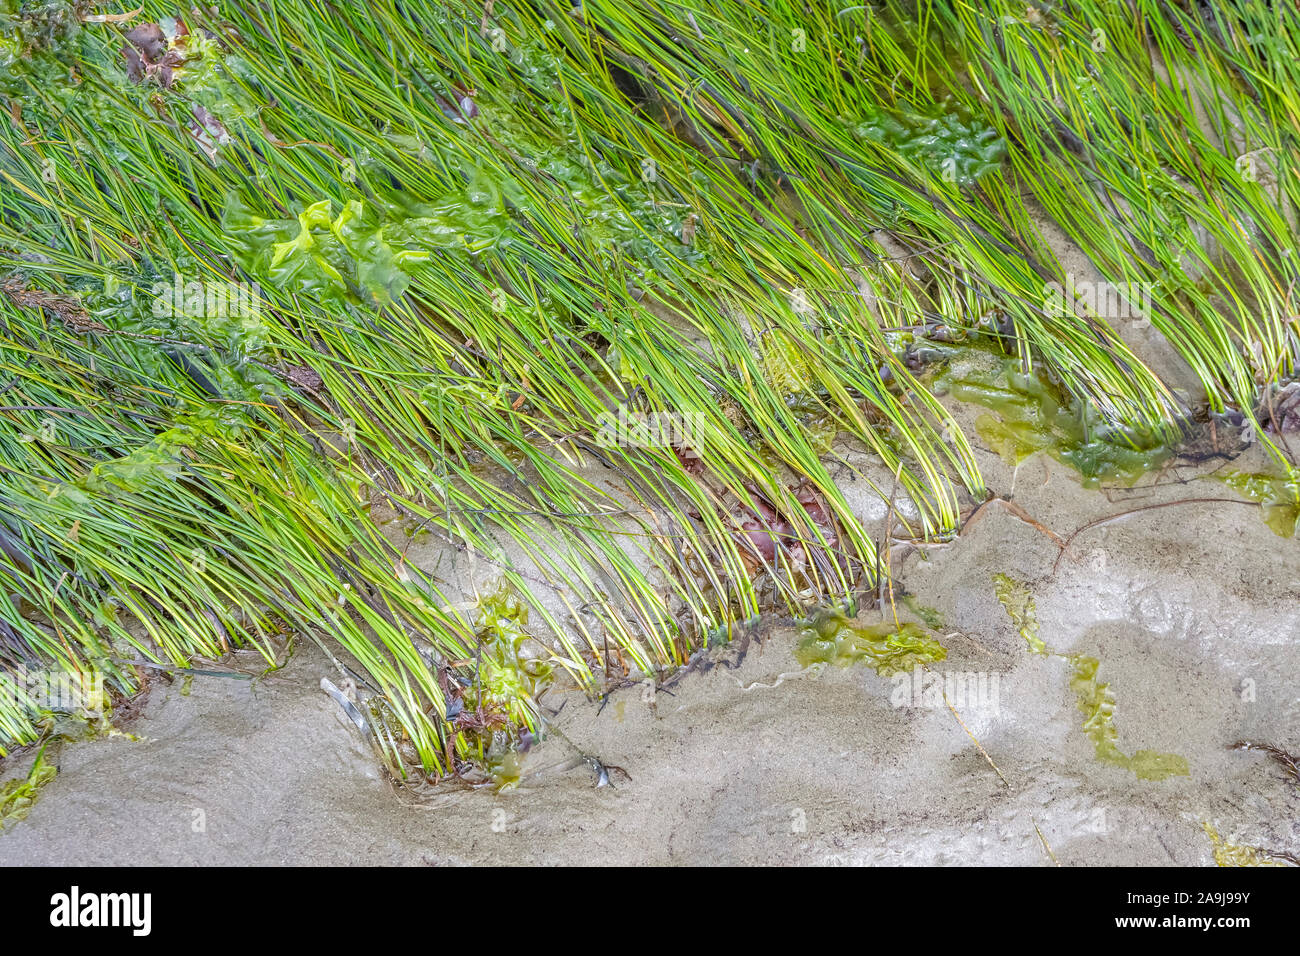 Surfgrass, Phyllospadix specie e lattuga di mare le alghe verdi, Ulva specie, lusinghe Rocks National Wildlife Refuge, Washington Nazionale Marittimo selvatica Foto Stock